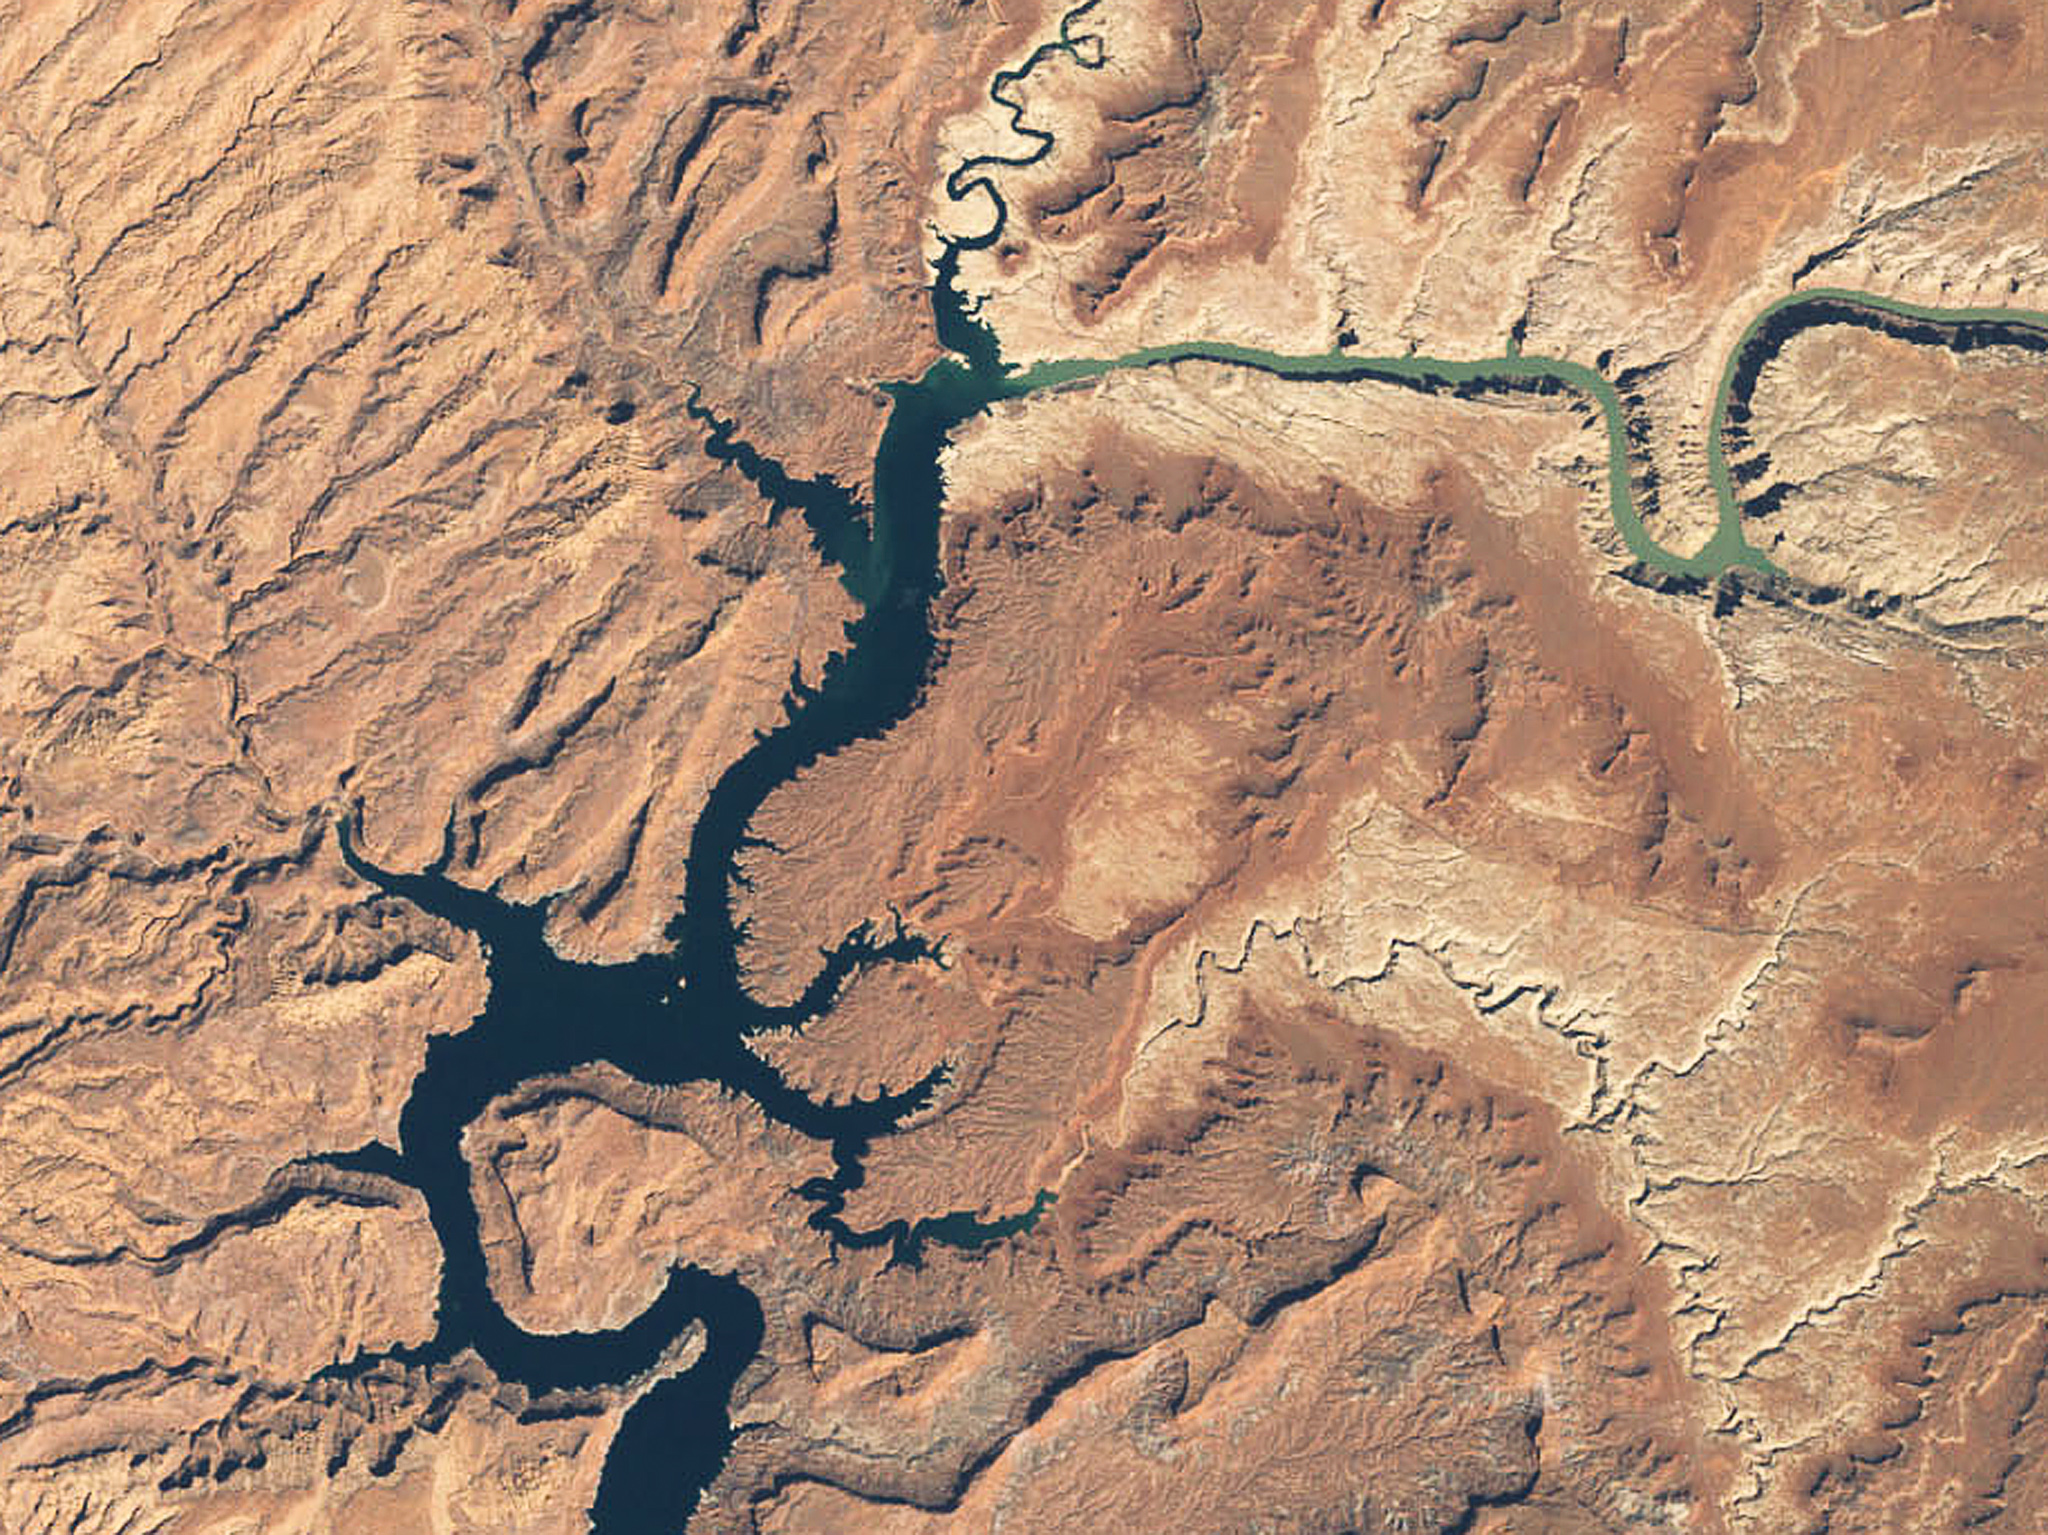 Притоки реки колорадо. Бассейн реки Колорадо. Большой каньон реки Колорадо на карте.